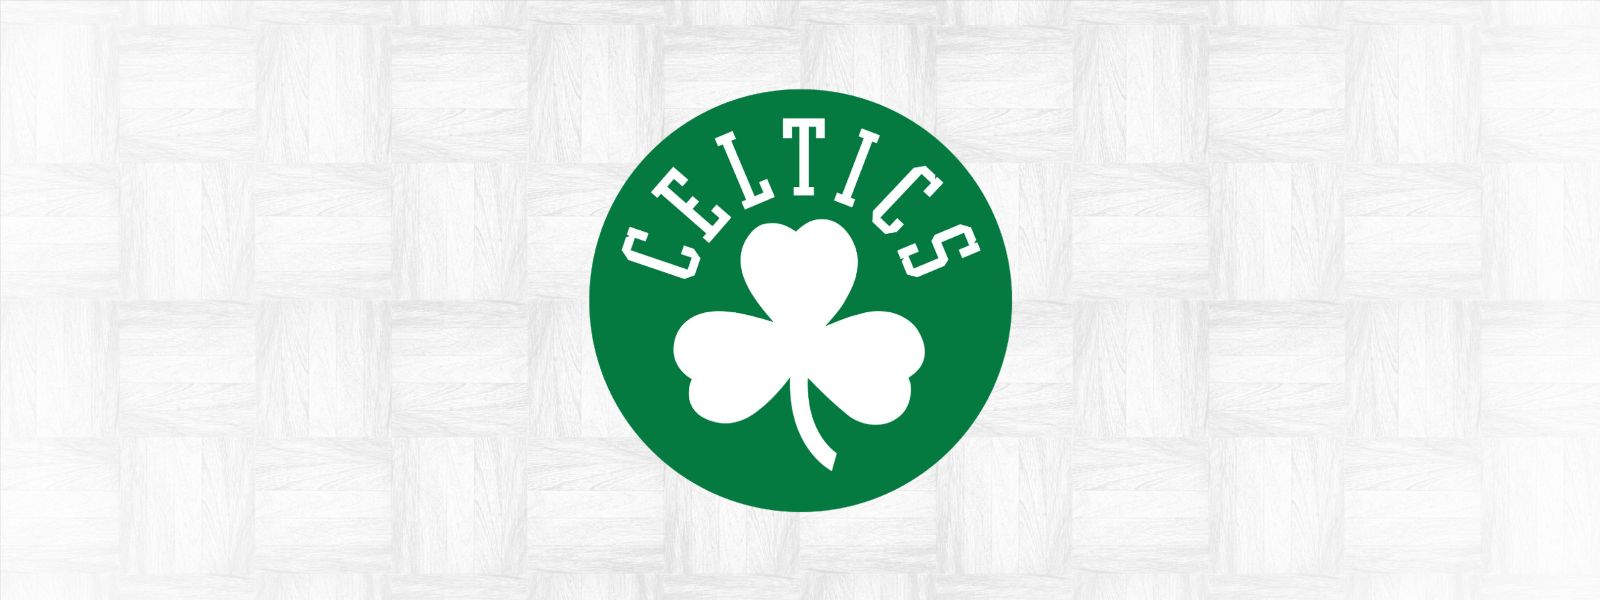 More Info for Celtics vs. Bulls